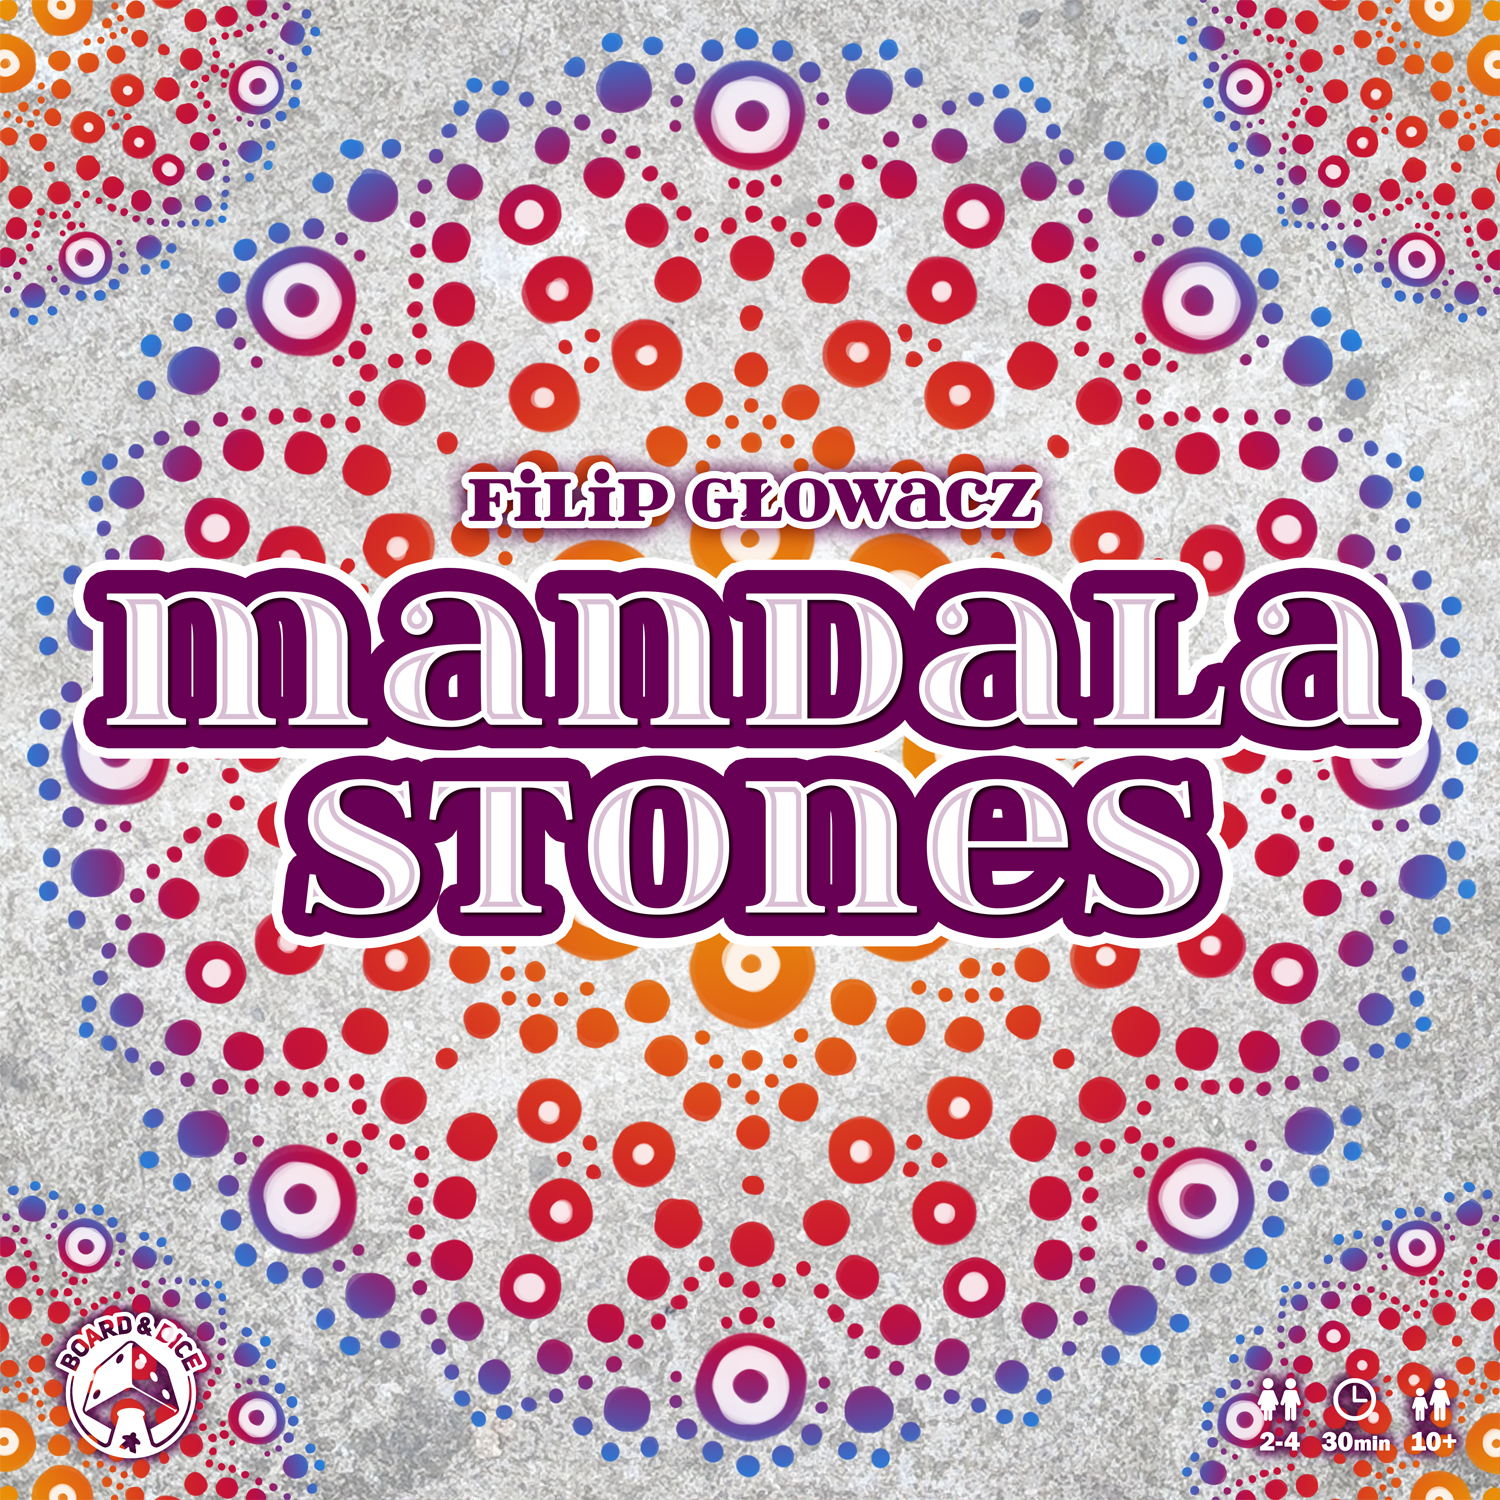 Mandala Stones Board Dice